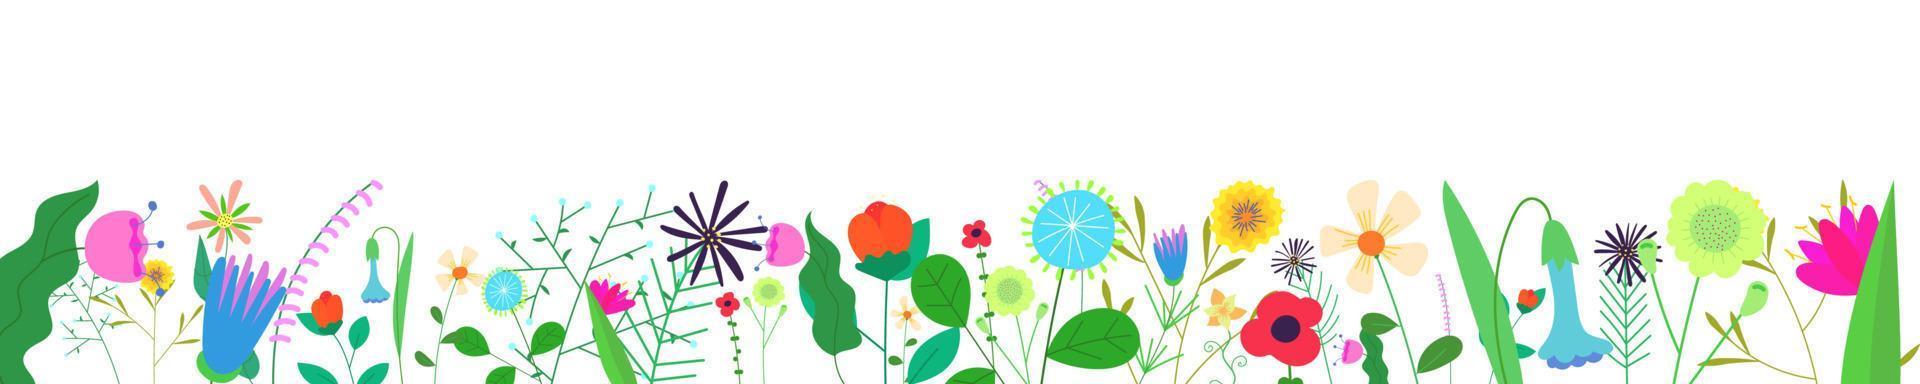 florale horizontale Banner auf weißem Hintergrund. frühling wild blühende blumen grenze. kräuterpflanzen dekoration. zarte sommerfeld- und wiesenwildblumen. botanische eps abstrakte blüten auf rahmenunterseite vektor